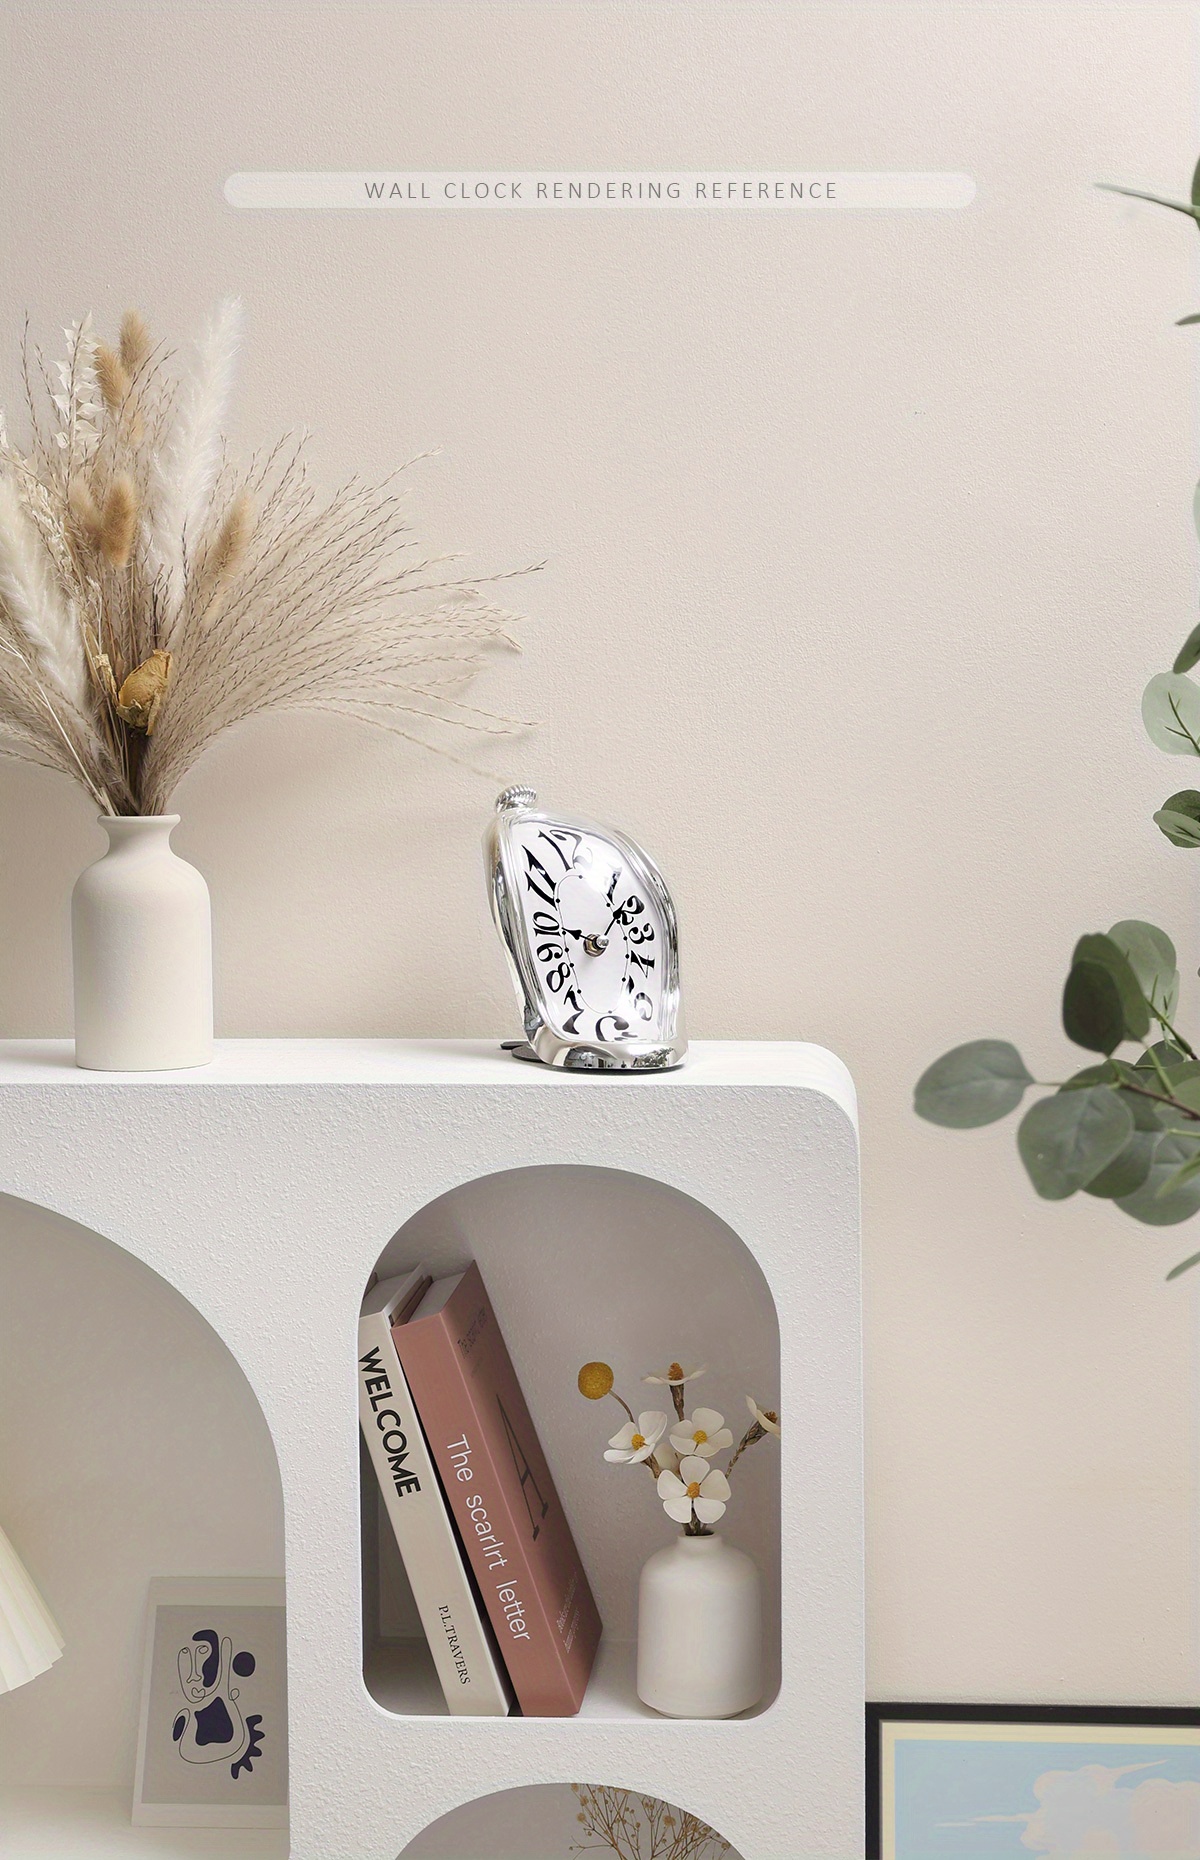 Reloj de mesa decorativo Flip Blanco, diseño unico y actual con tarjetas  auto cambiantes de la marca Fisura ideal para regalar. — WonderfulHome Shop